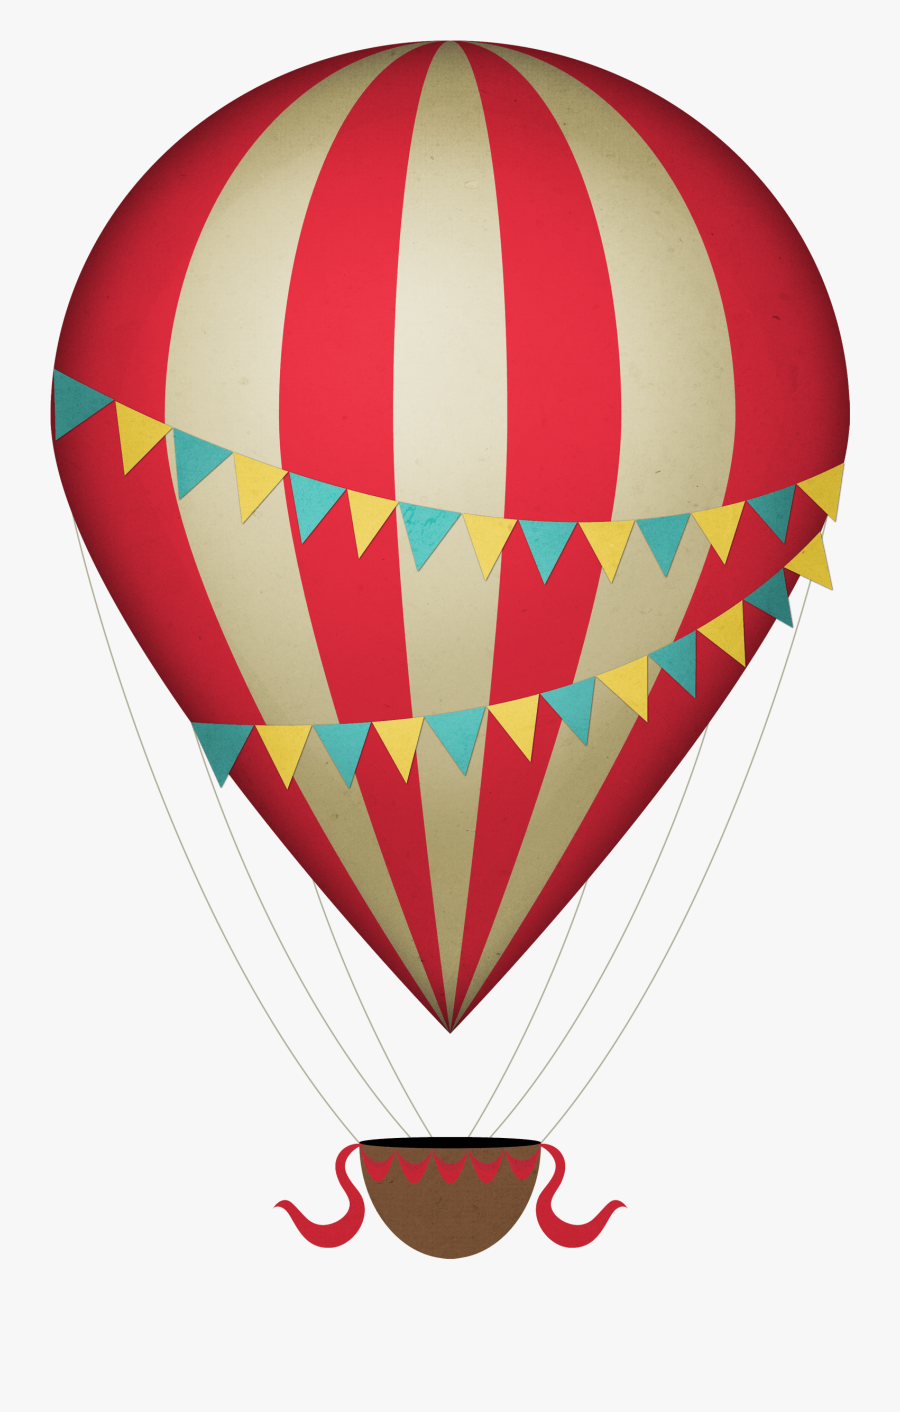 Vintage Clipart Hot Air Balloon - Hot Air Balloon Clipart Png, Transparent Clipart